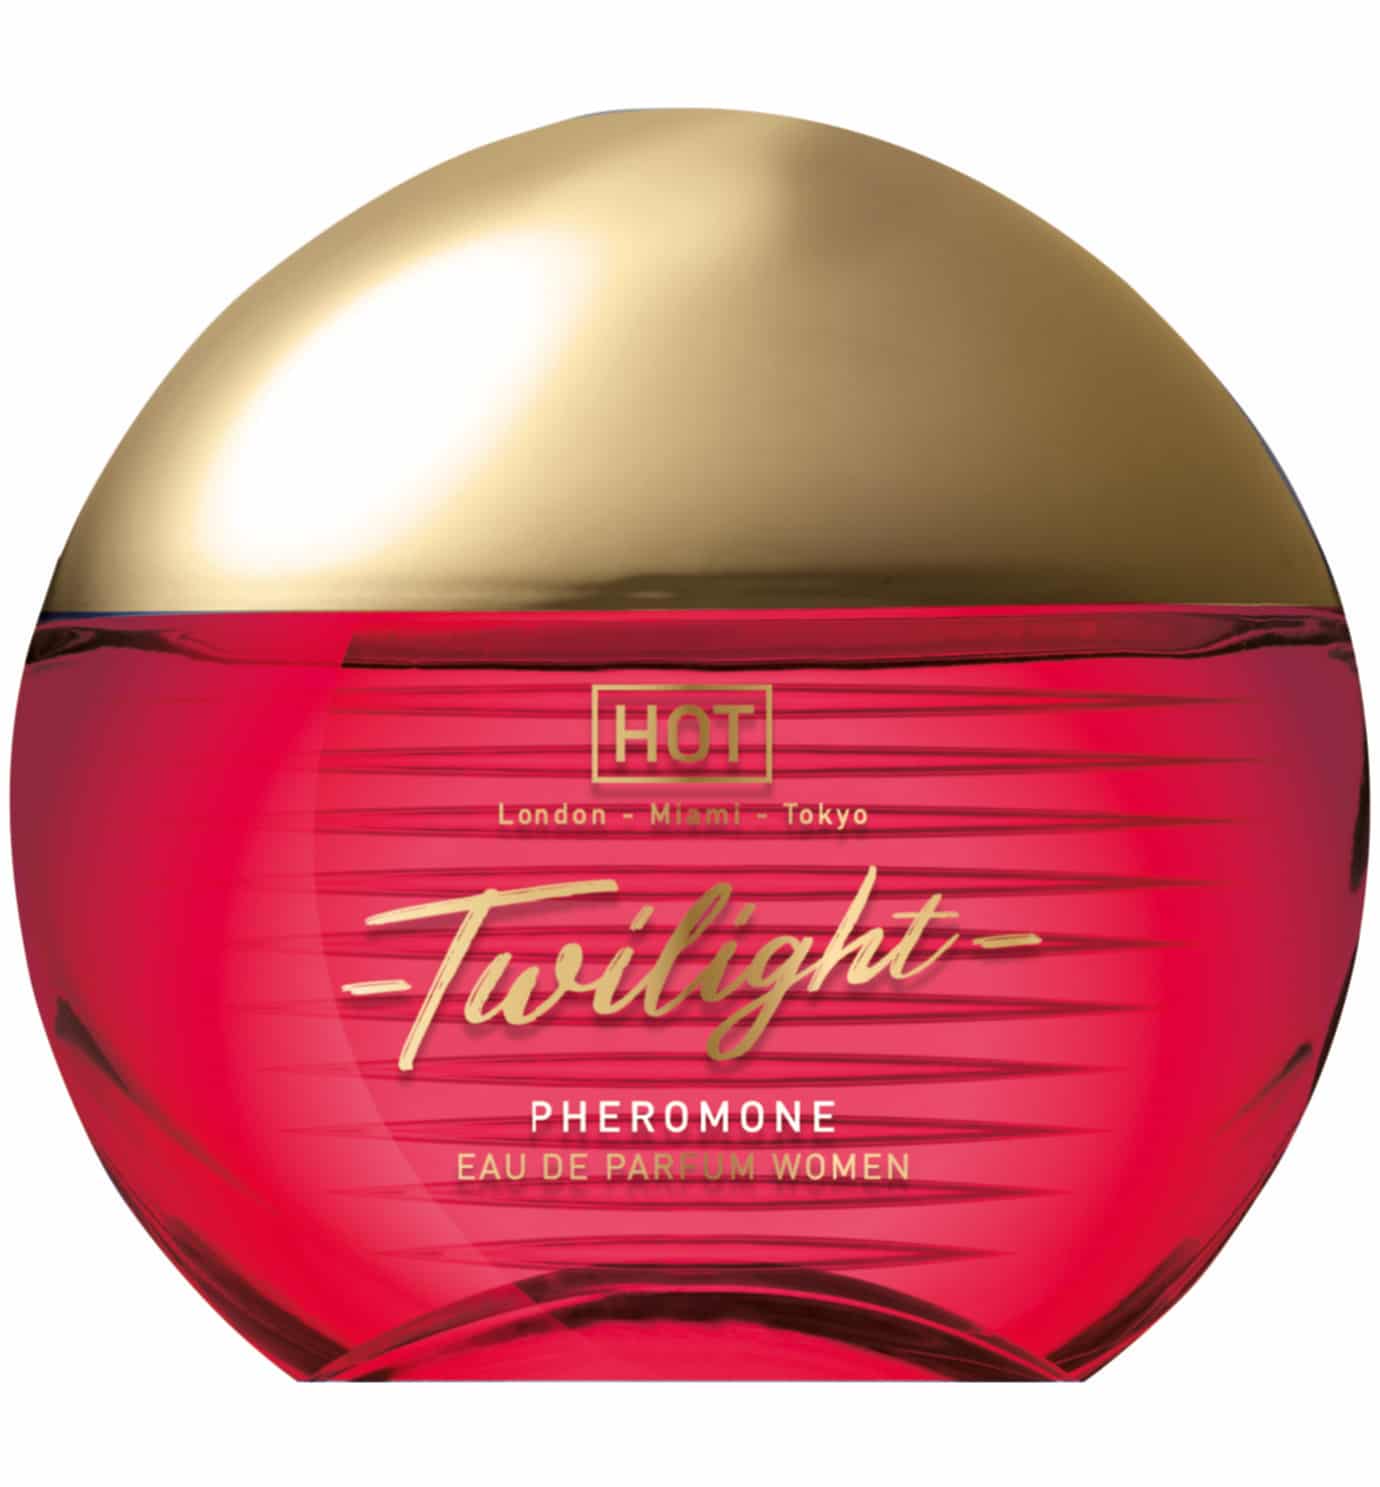 HOT Twilight Feromonen Parfum - 15 ml